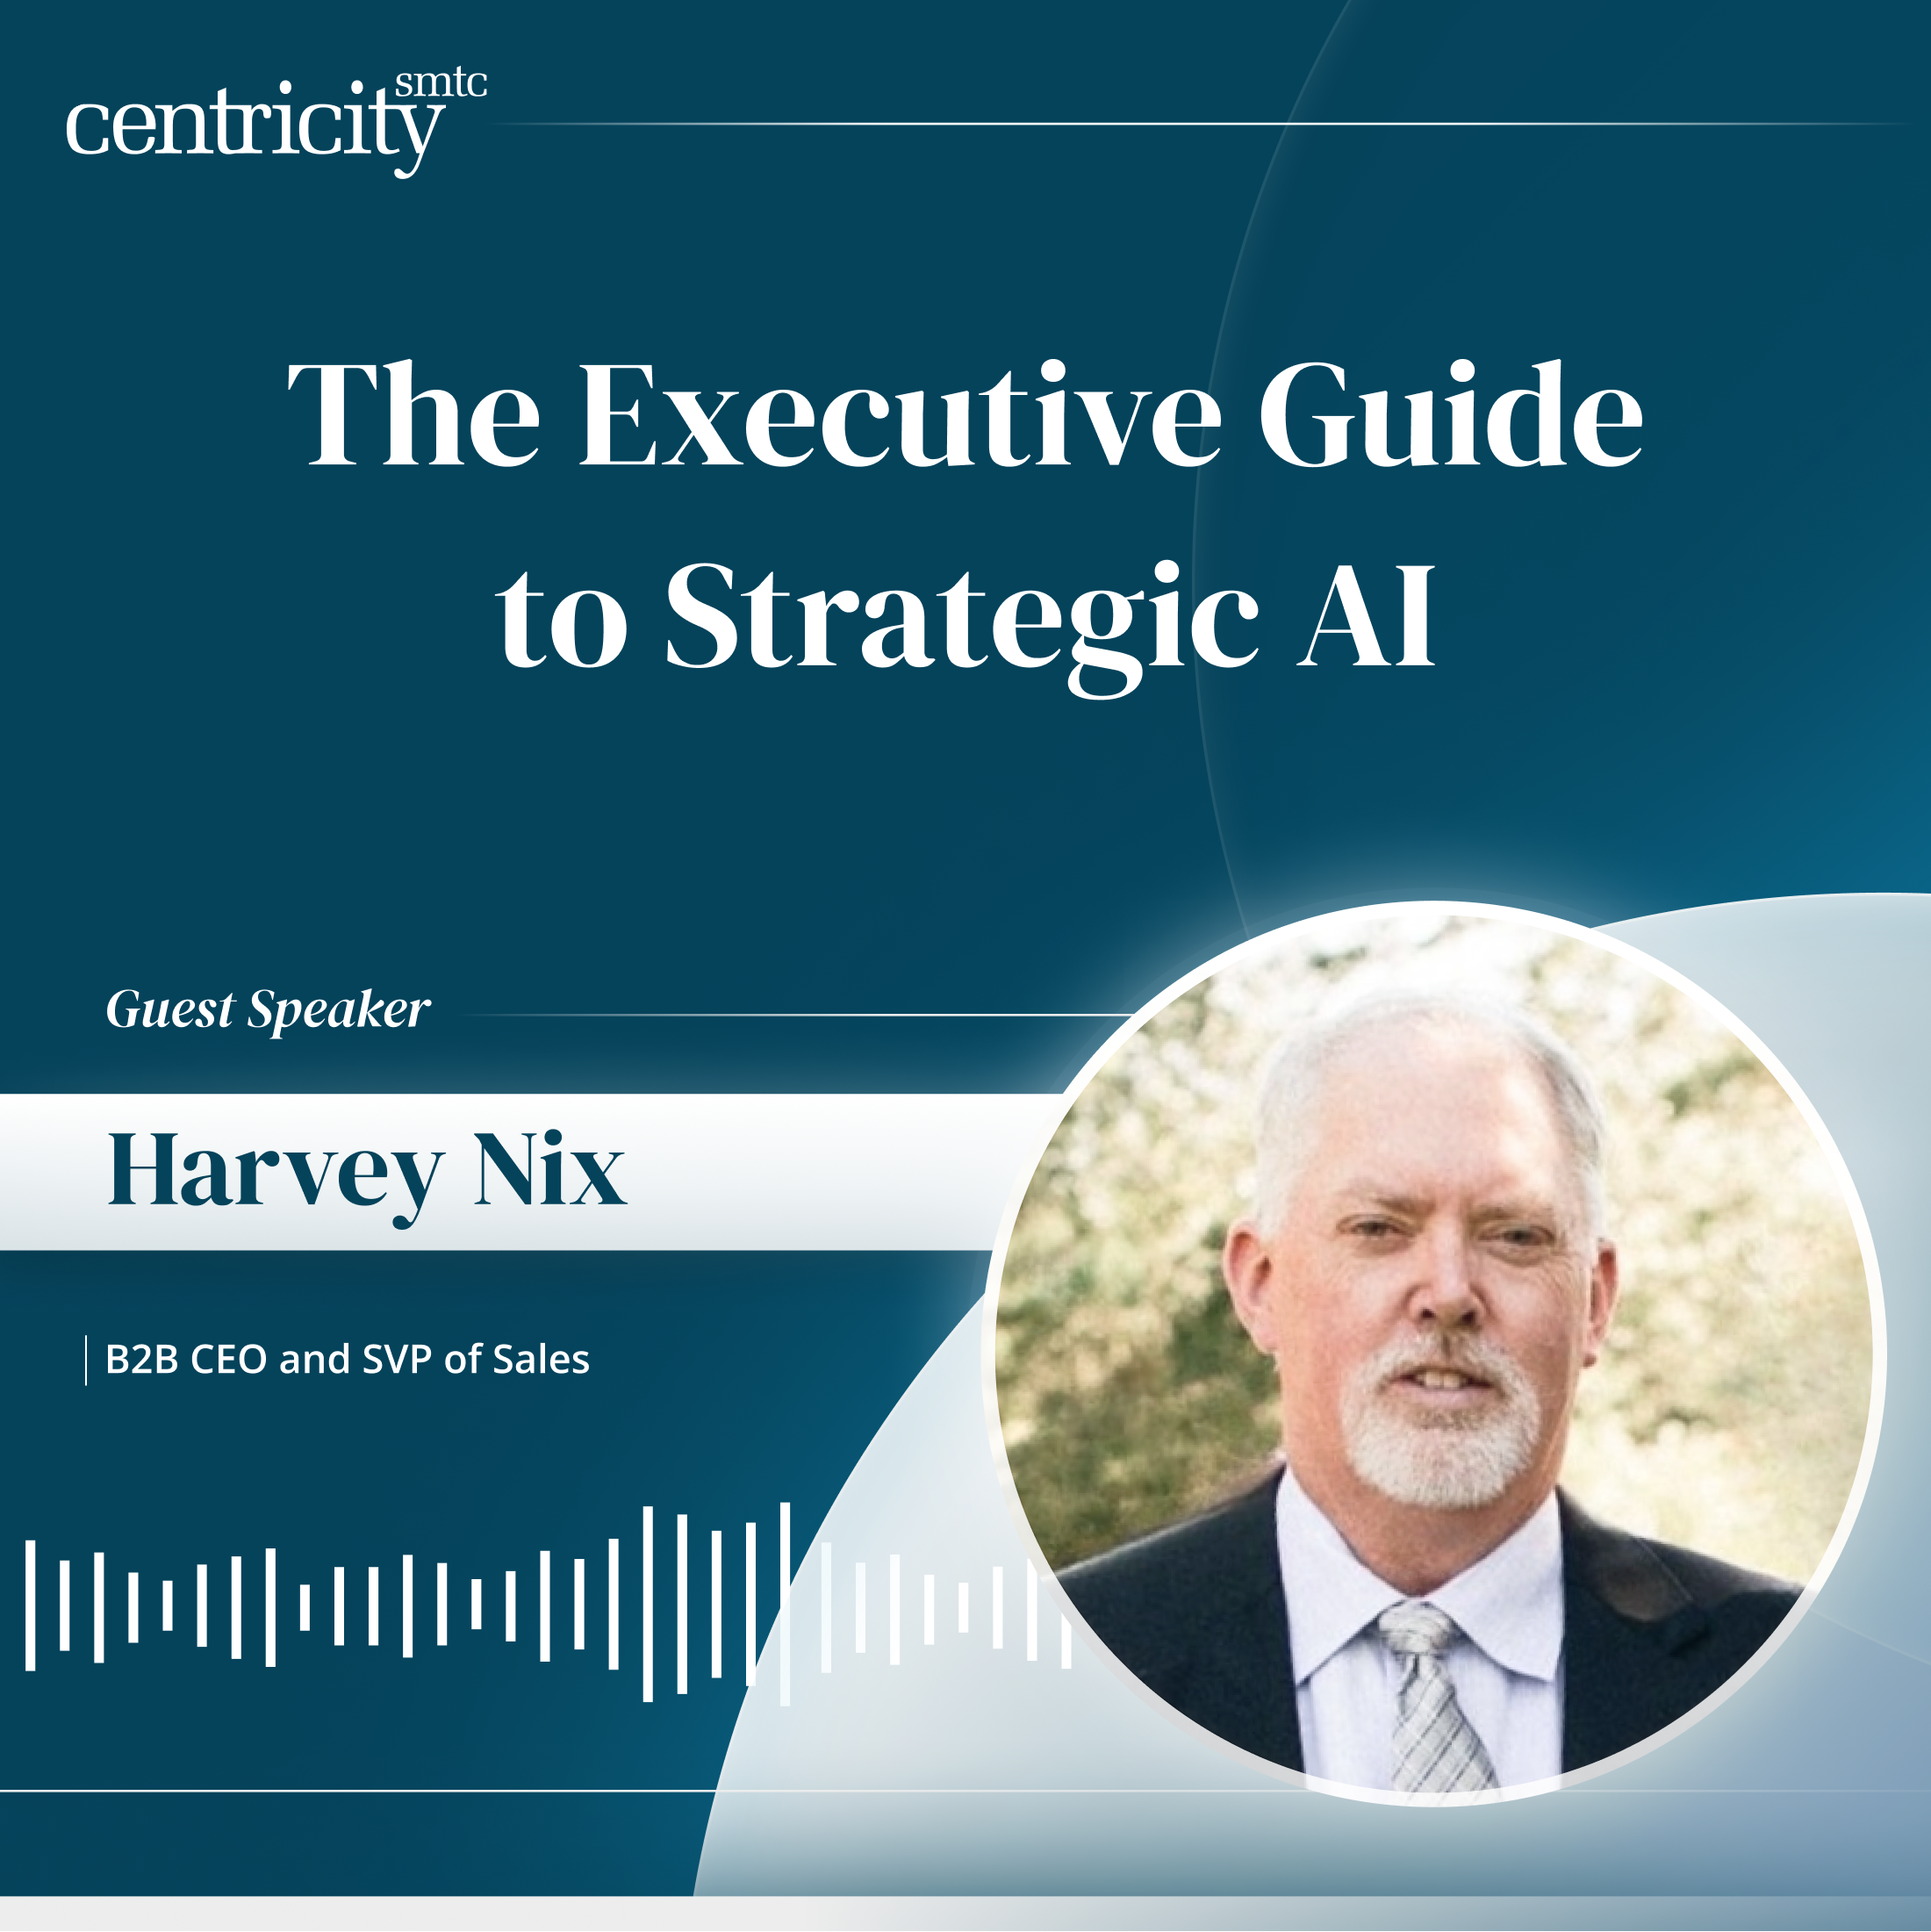 The Executive Guide to Strategic AI